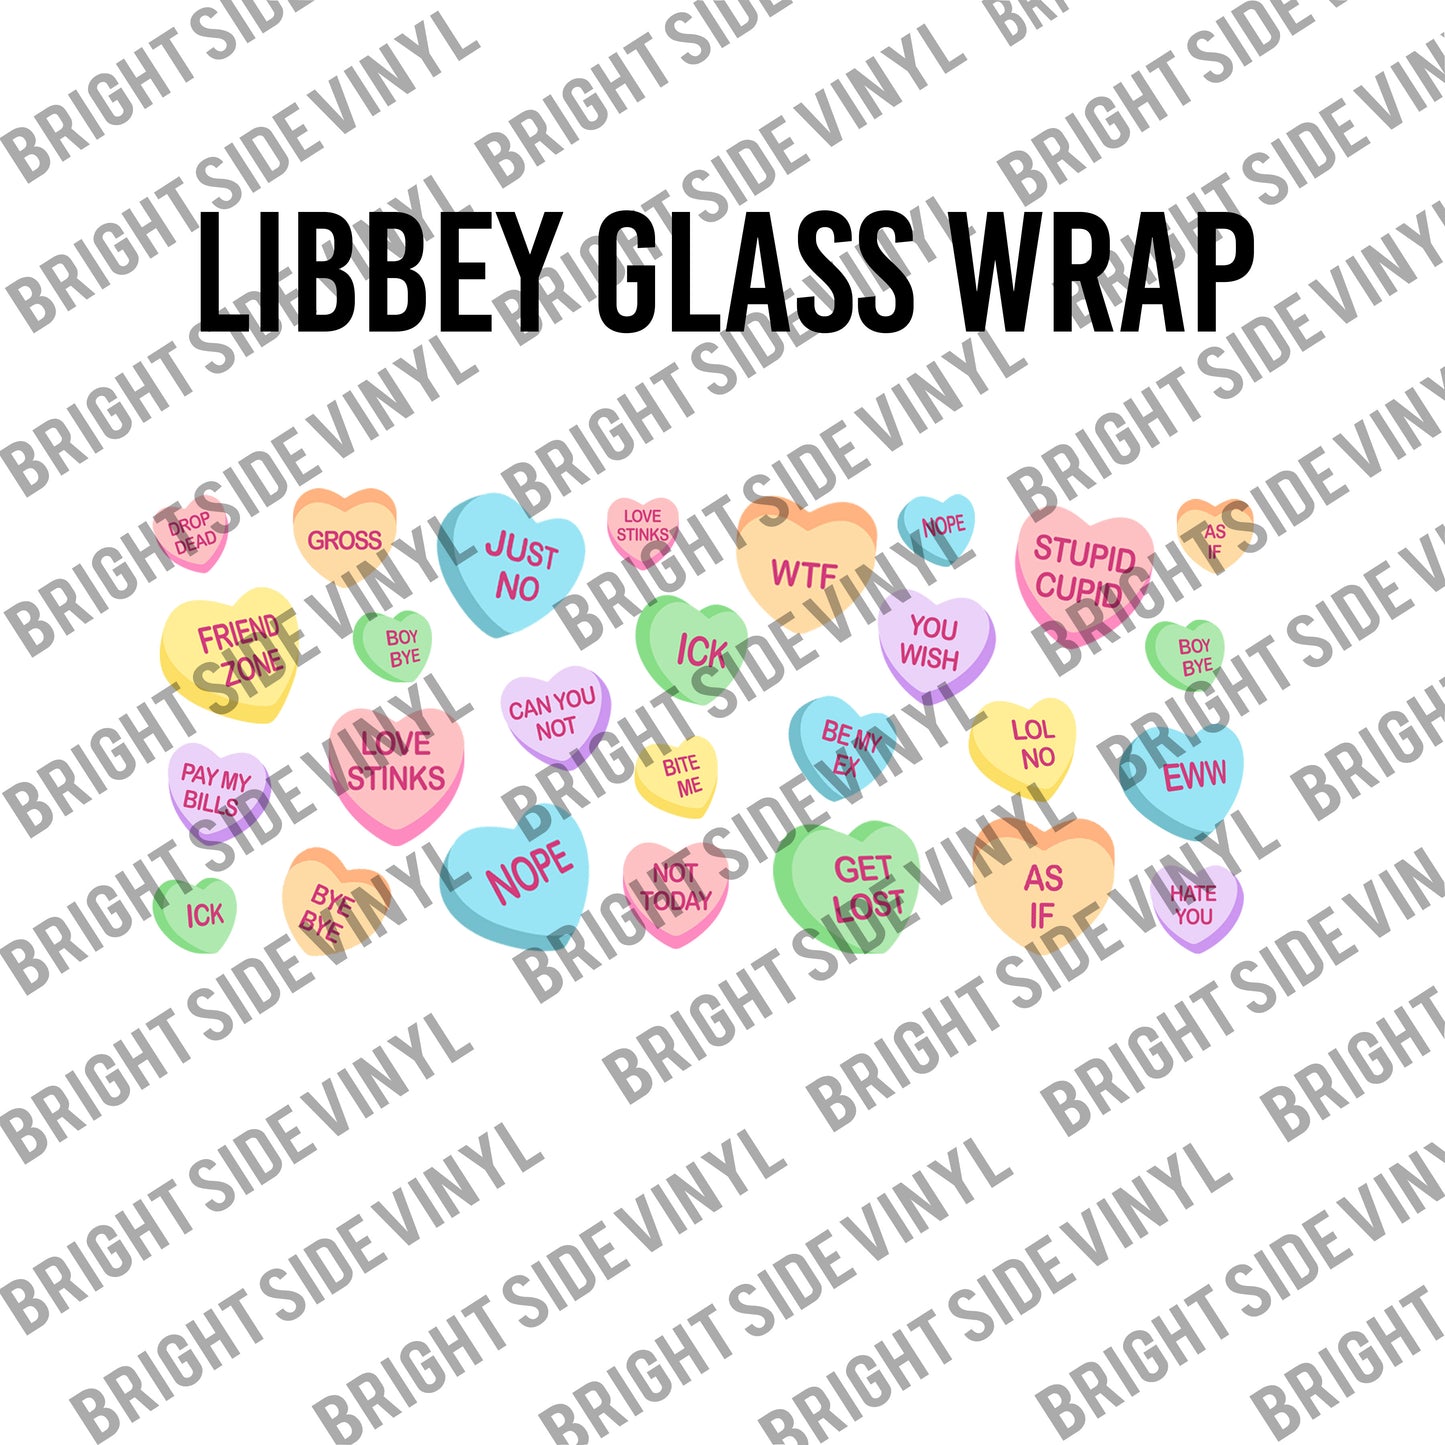 Anti-Valentine (Libby Glass Wrap)